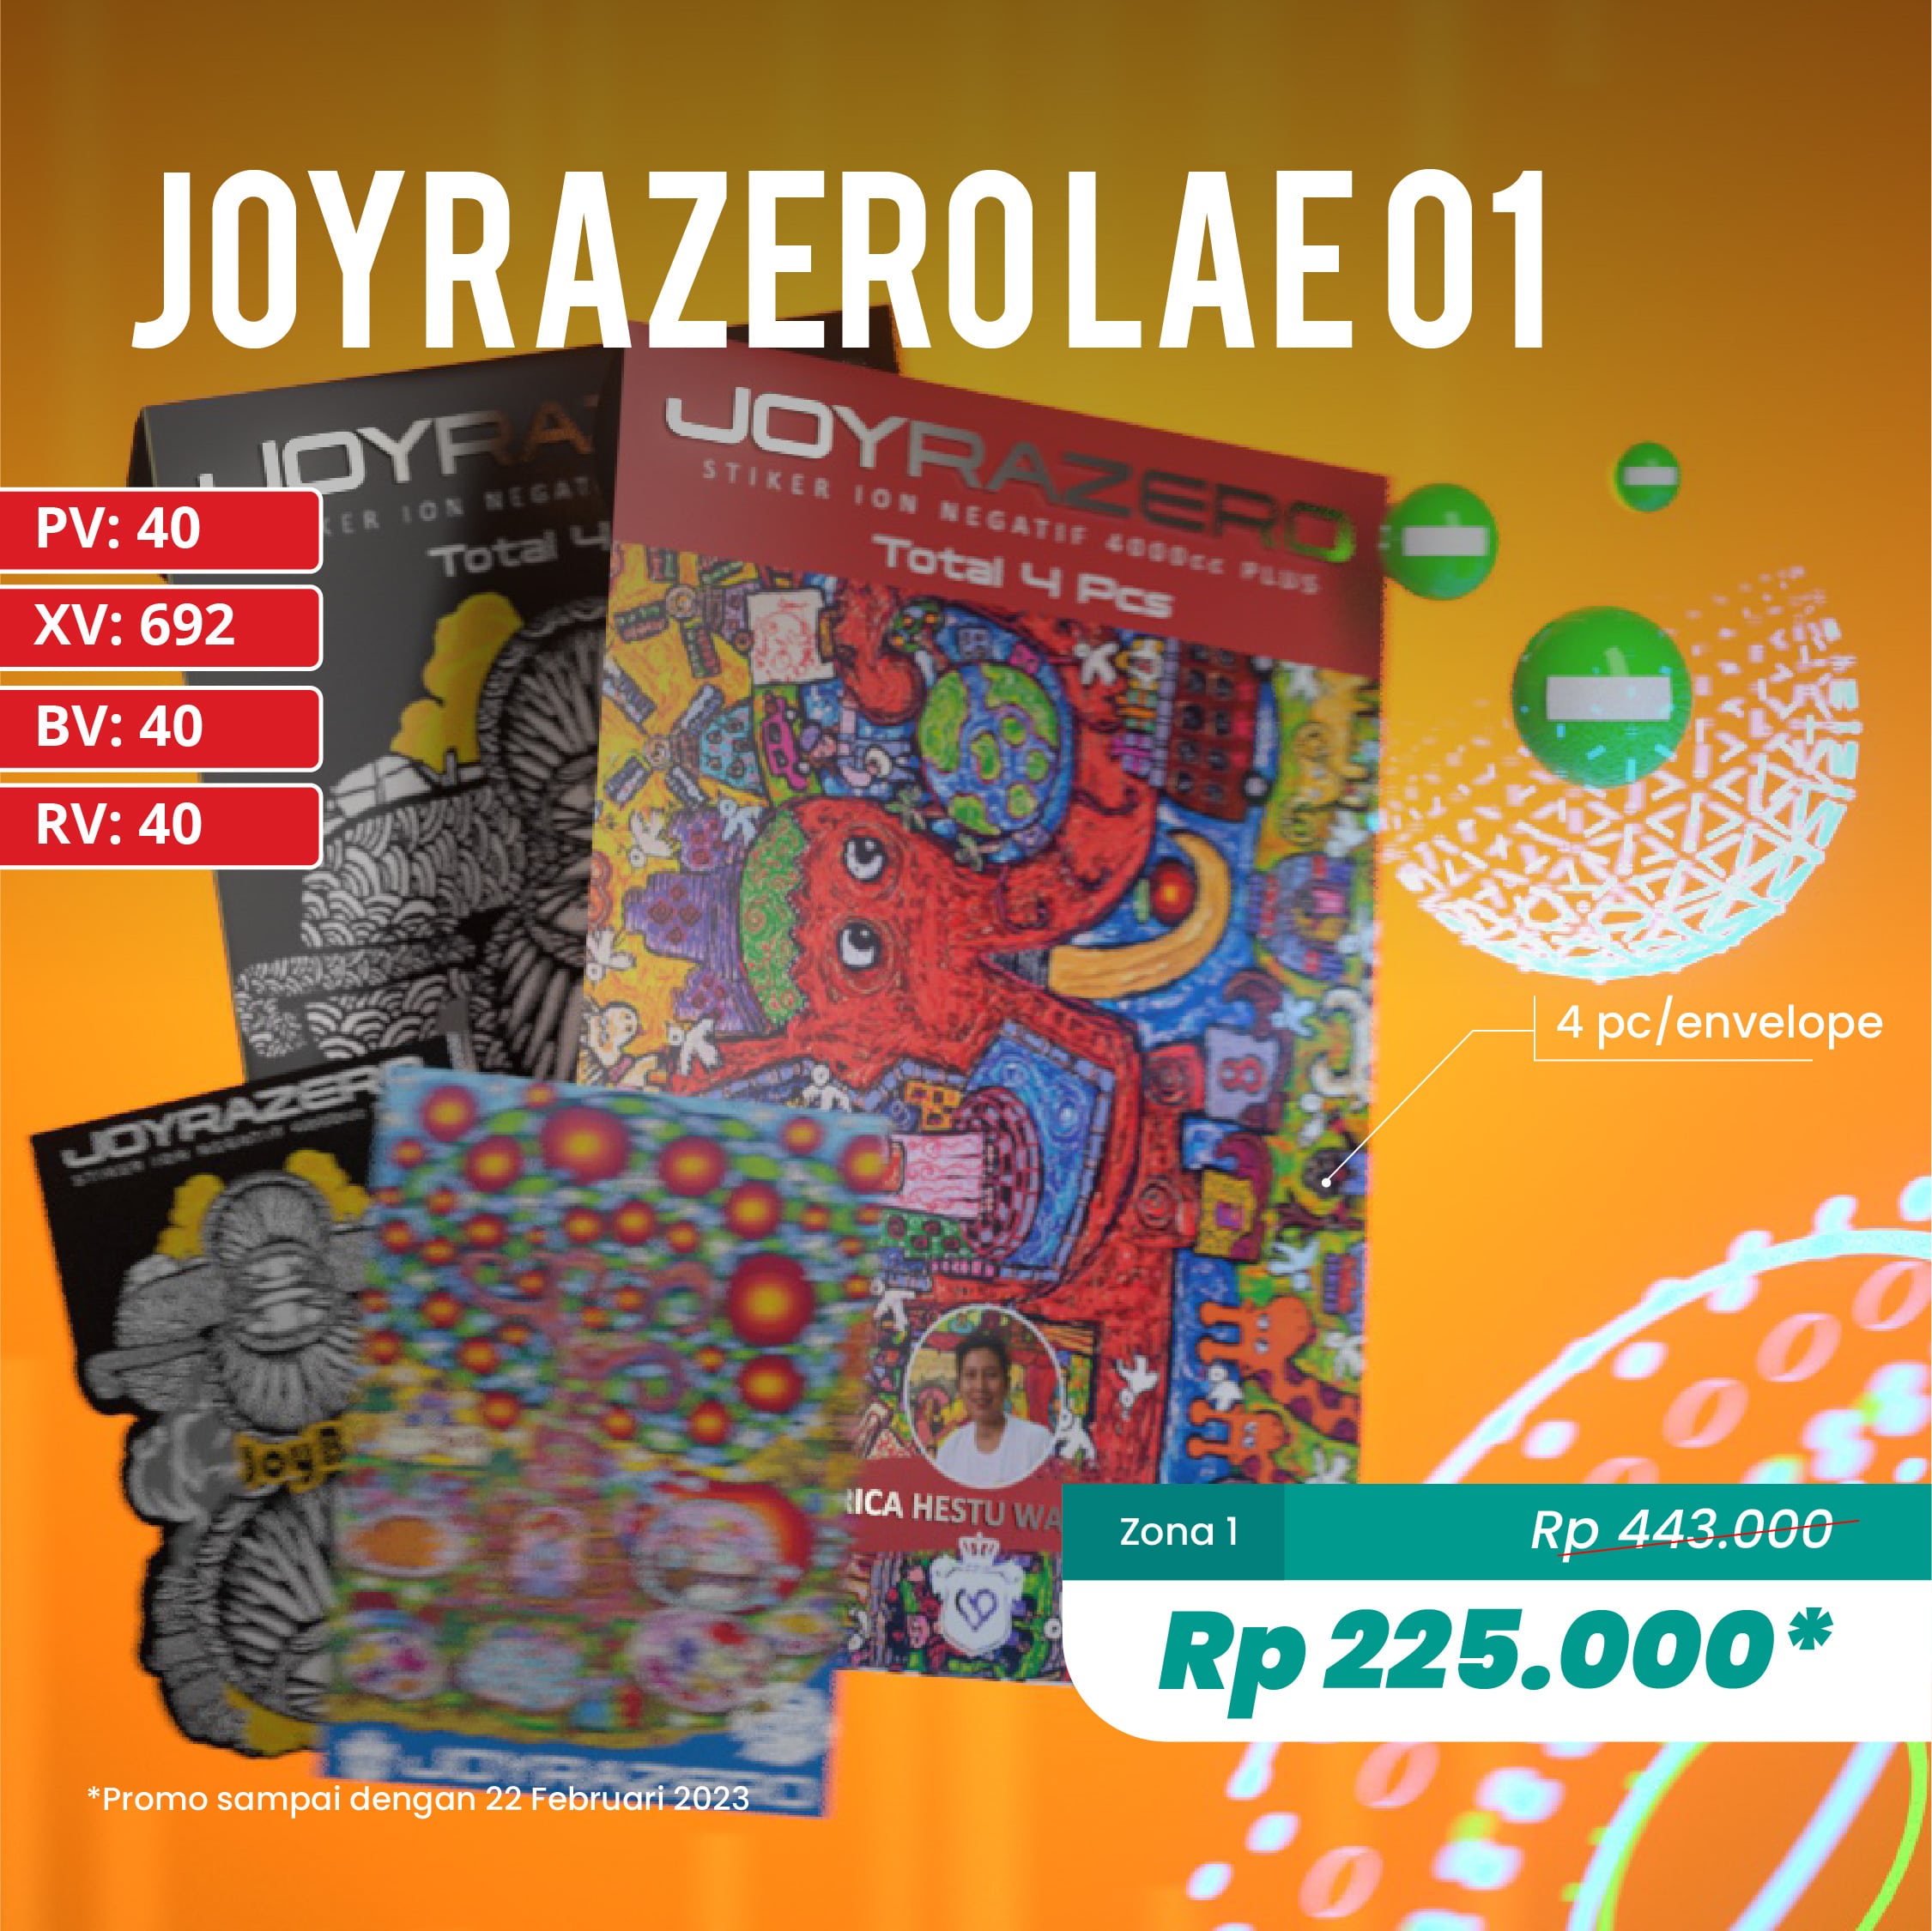 Joyrazero LAE 01 (J34)